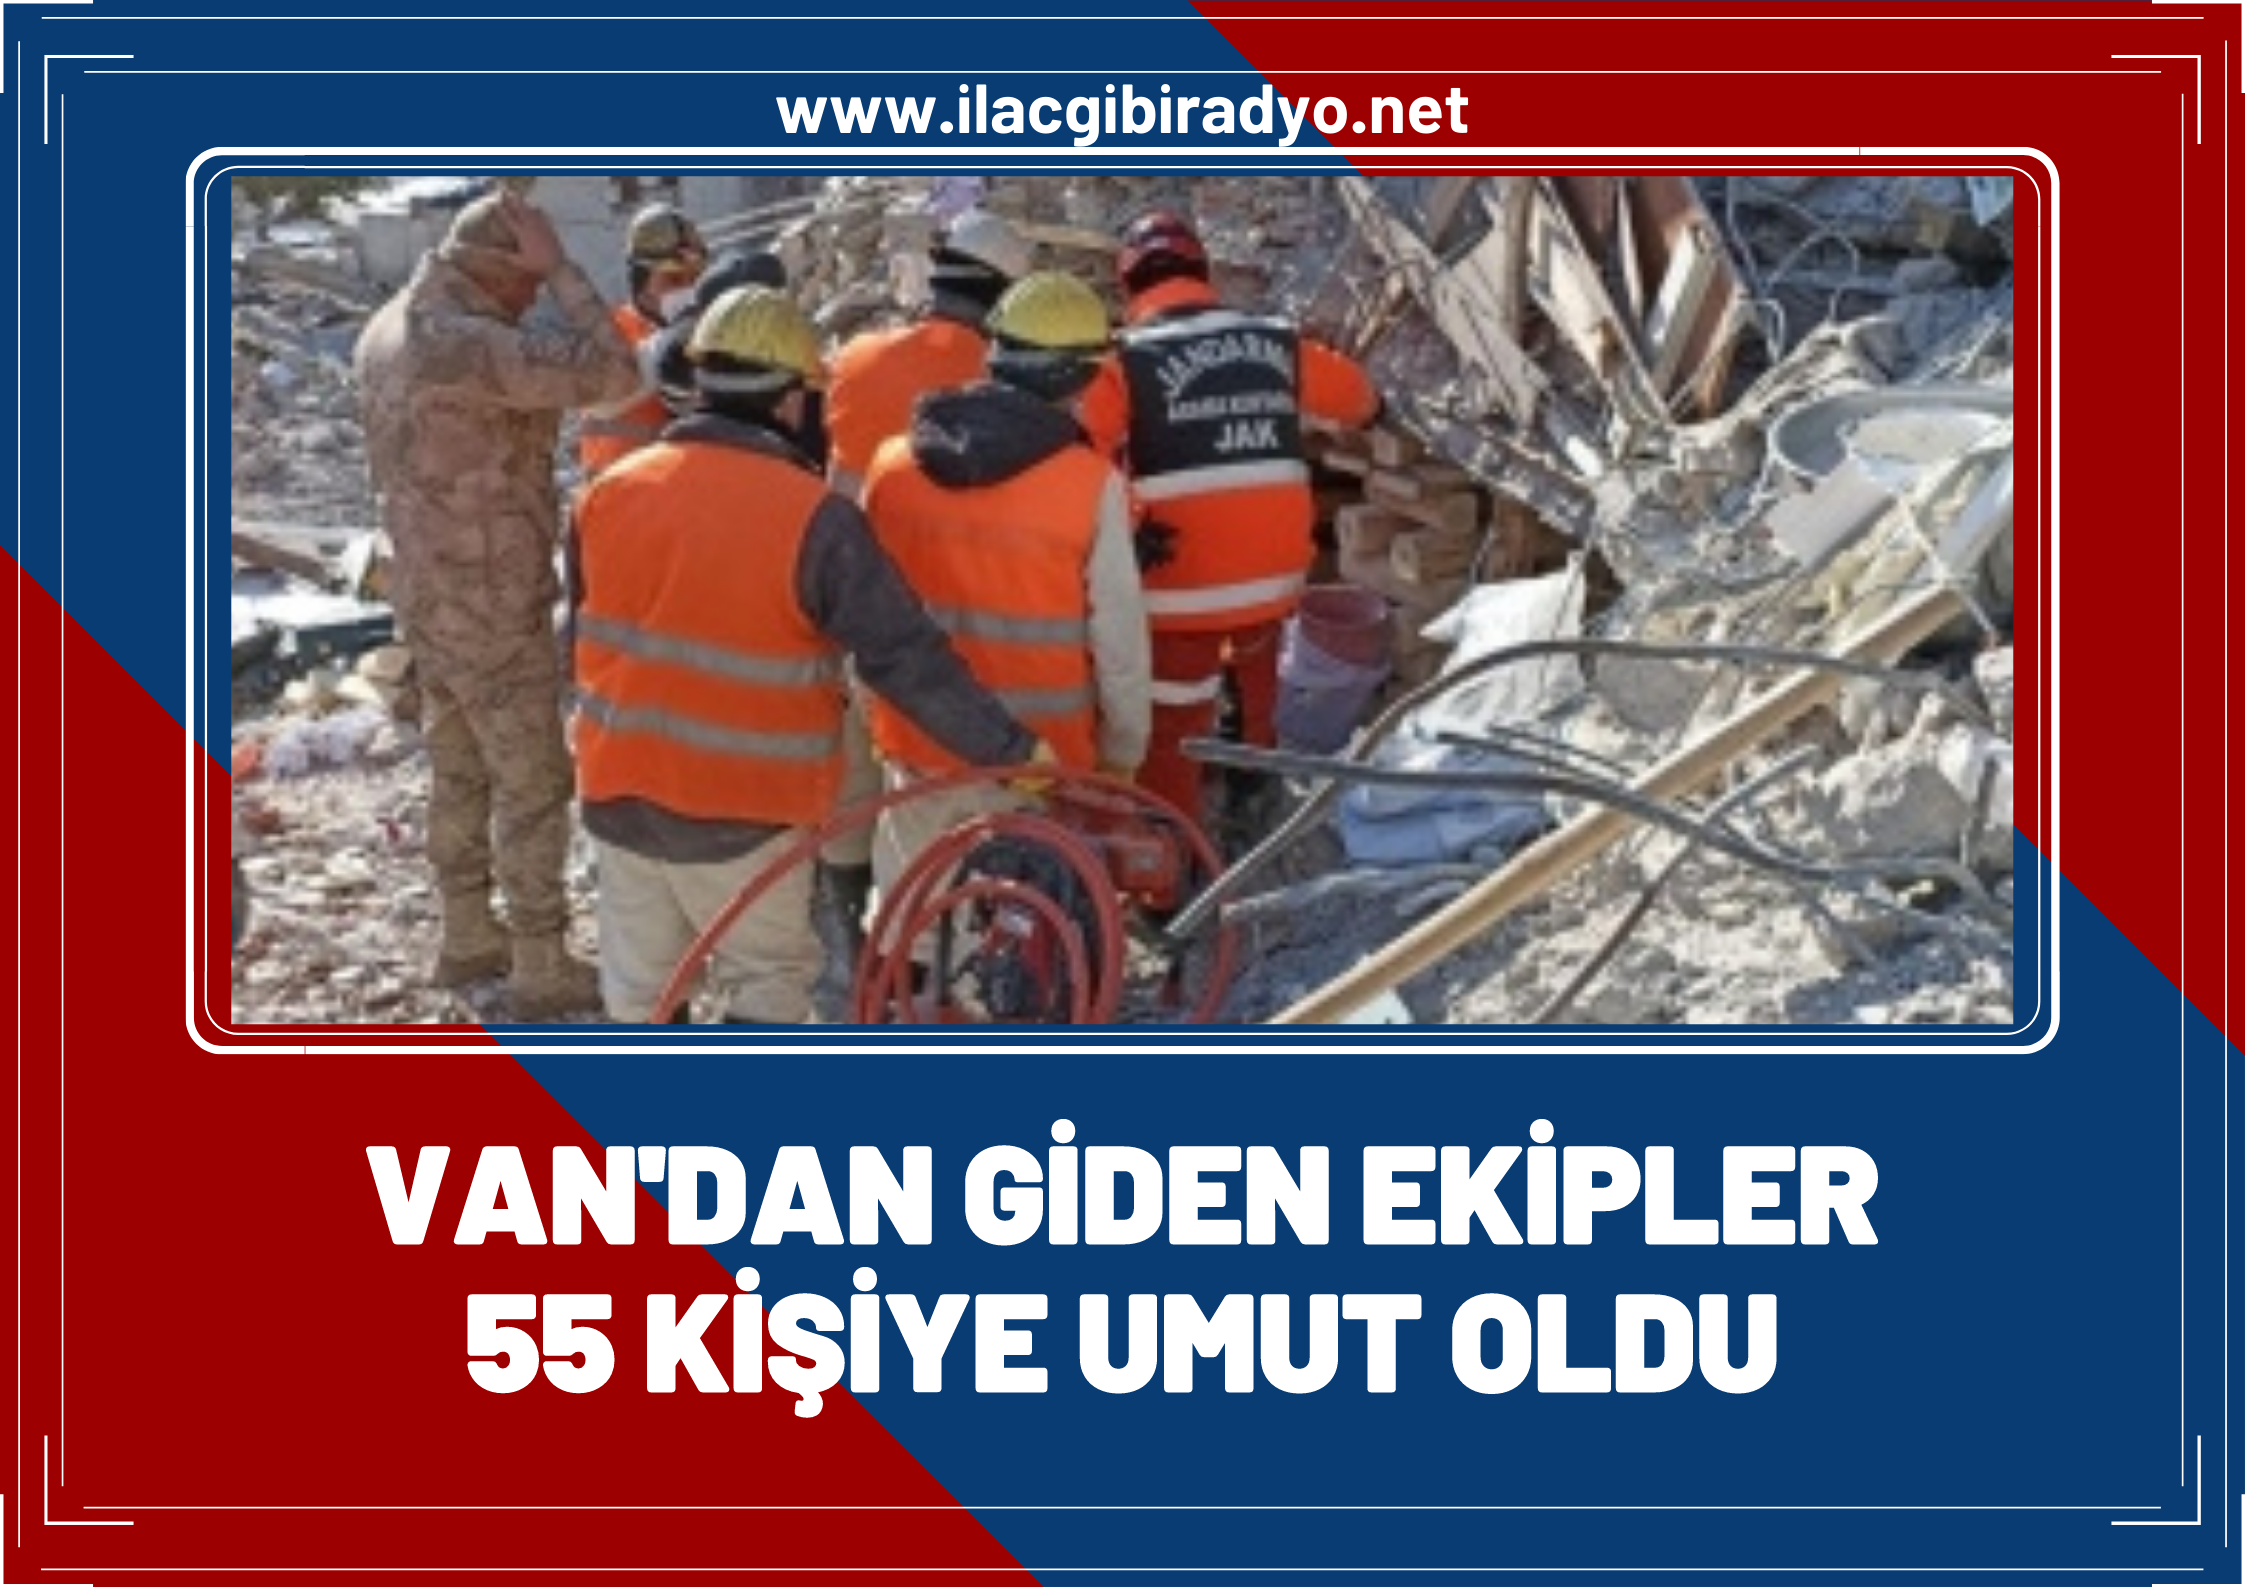 Van’dan deprem bölgesine giden JAK ekipleri 55 kişiye yeniden umut oldu!